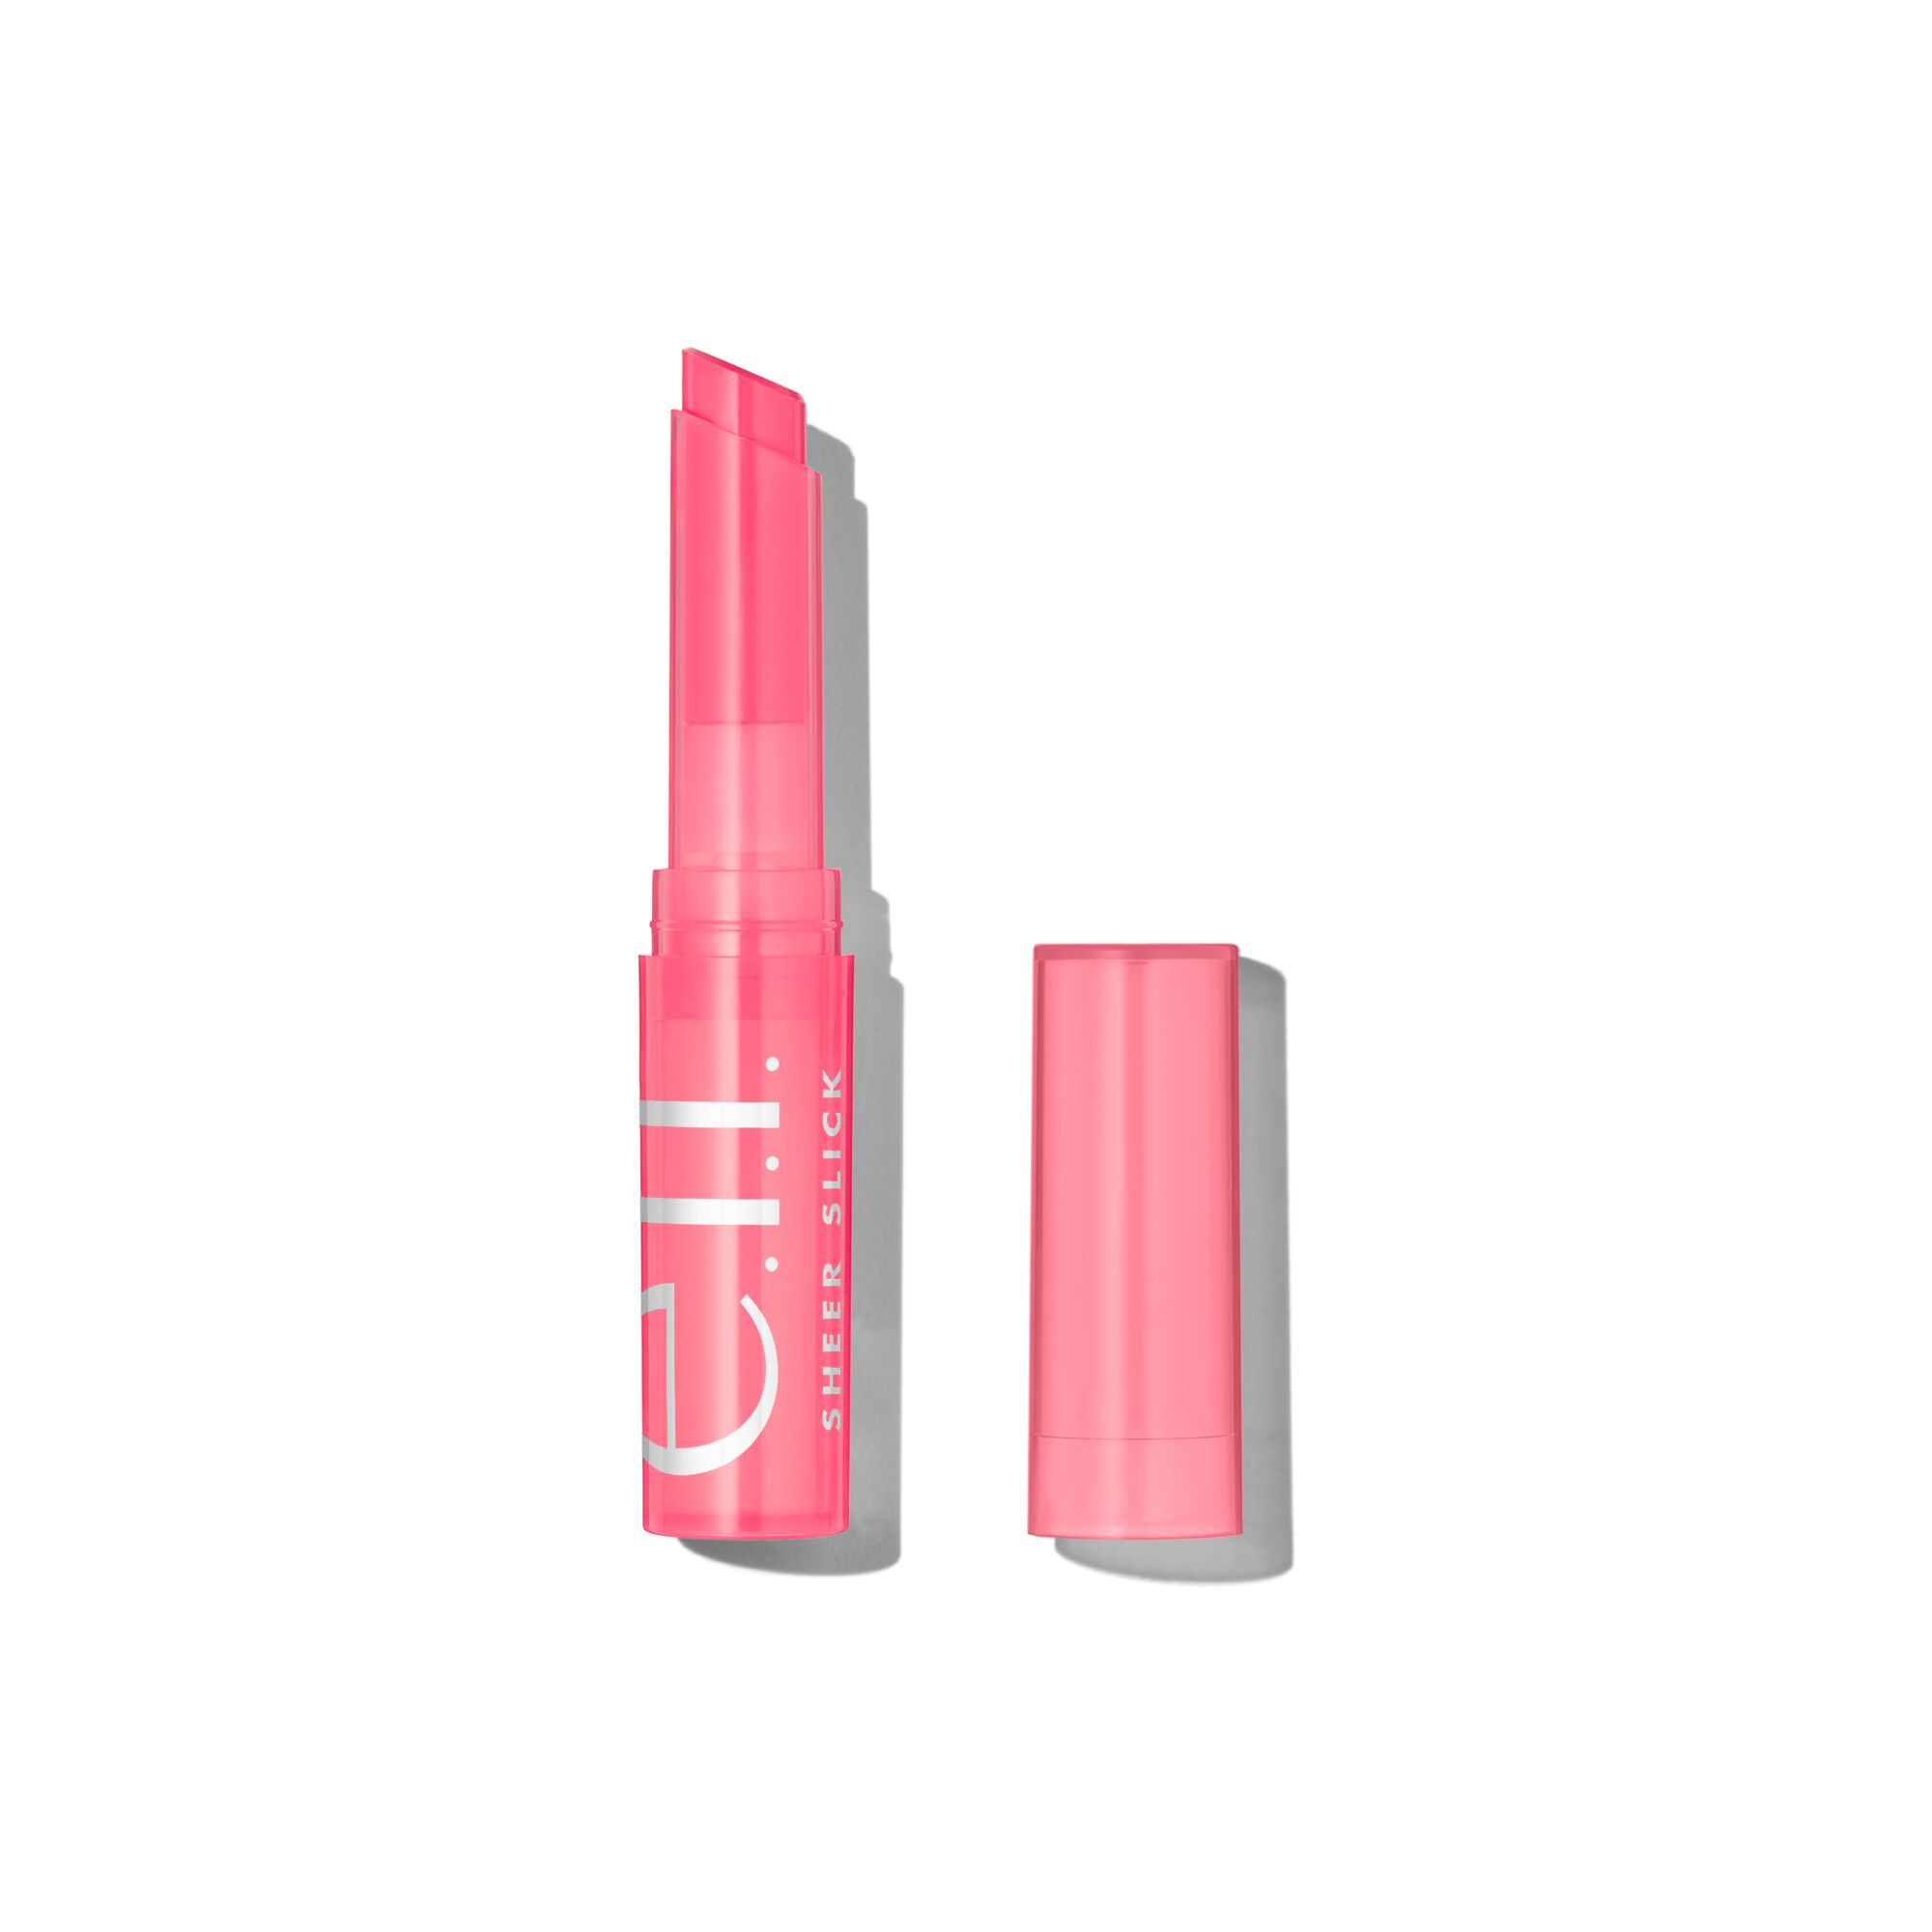 Slick Sheer Lipstick w/ Vitamin E | e.l.f. Cosmetics